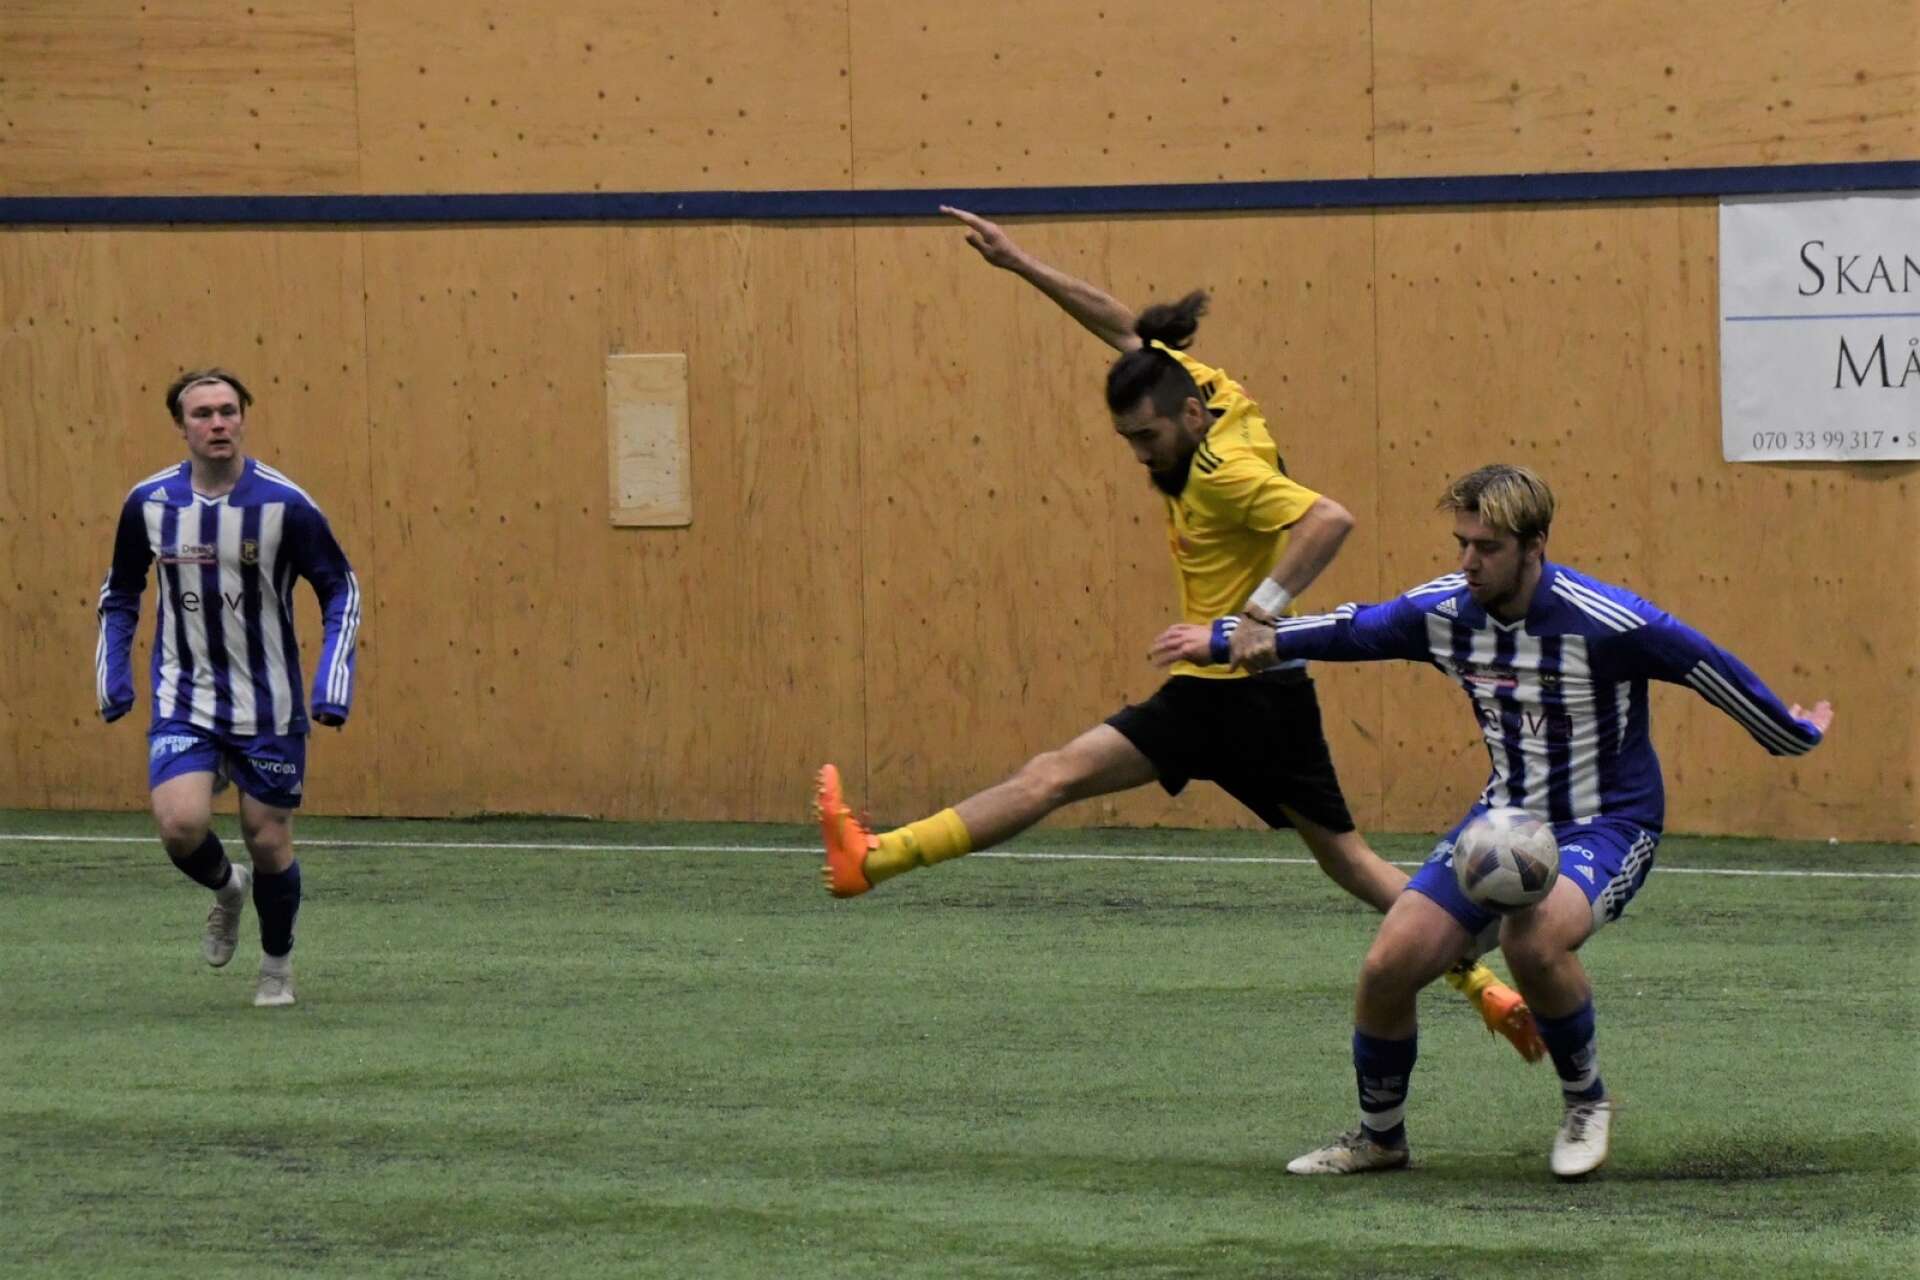 Kamp om bollen mellan Lysvik och Rottneros. Matchen vann RIK med 1-0.